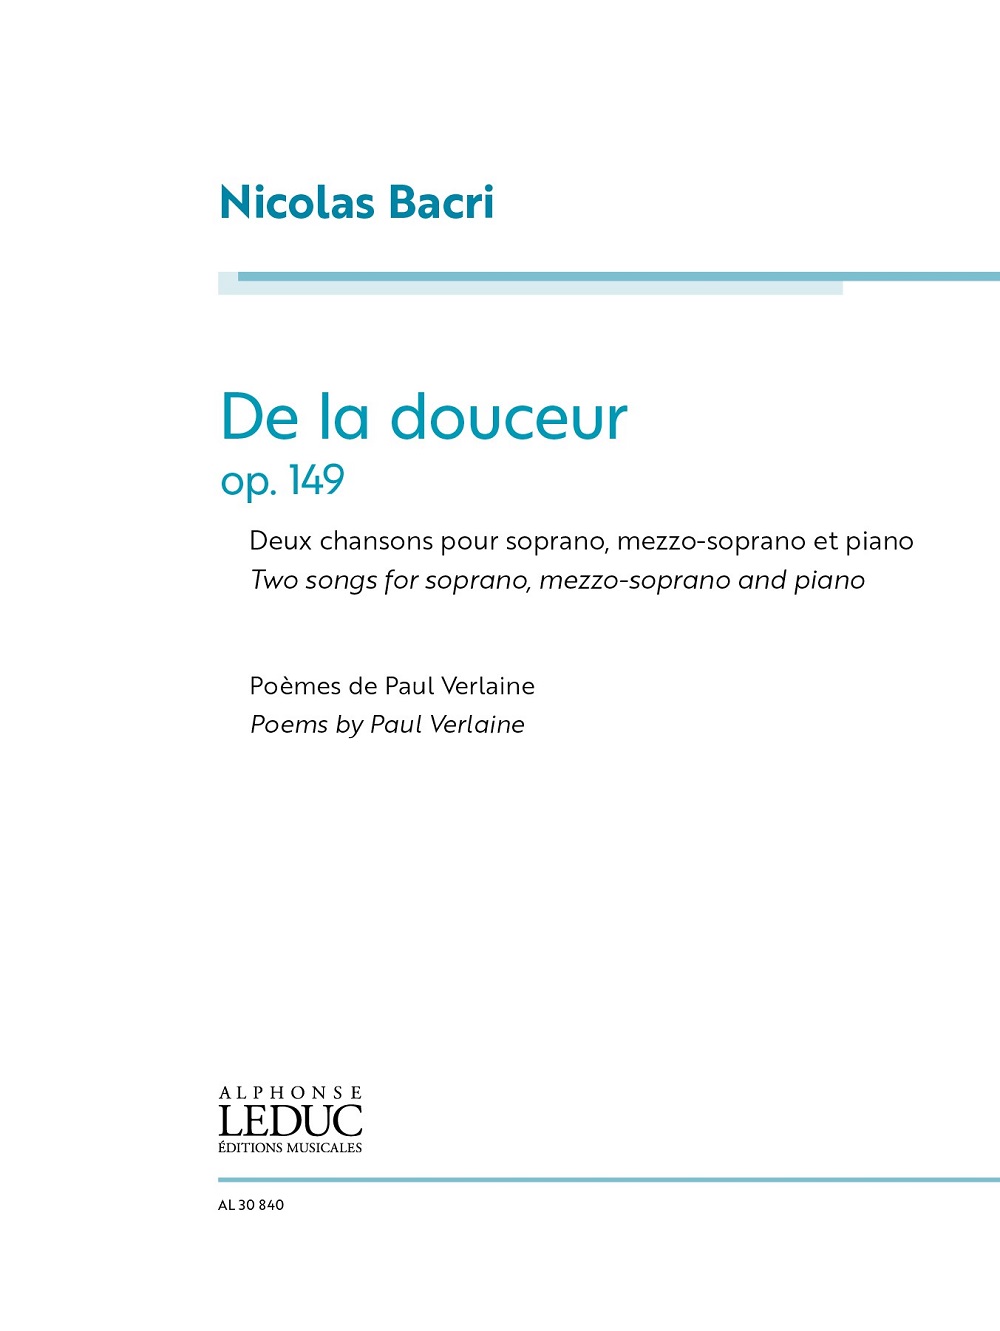 De la douceur, pour Soprano, Mezzo-Soprano and Piano. Vocal Score. 9781705145876